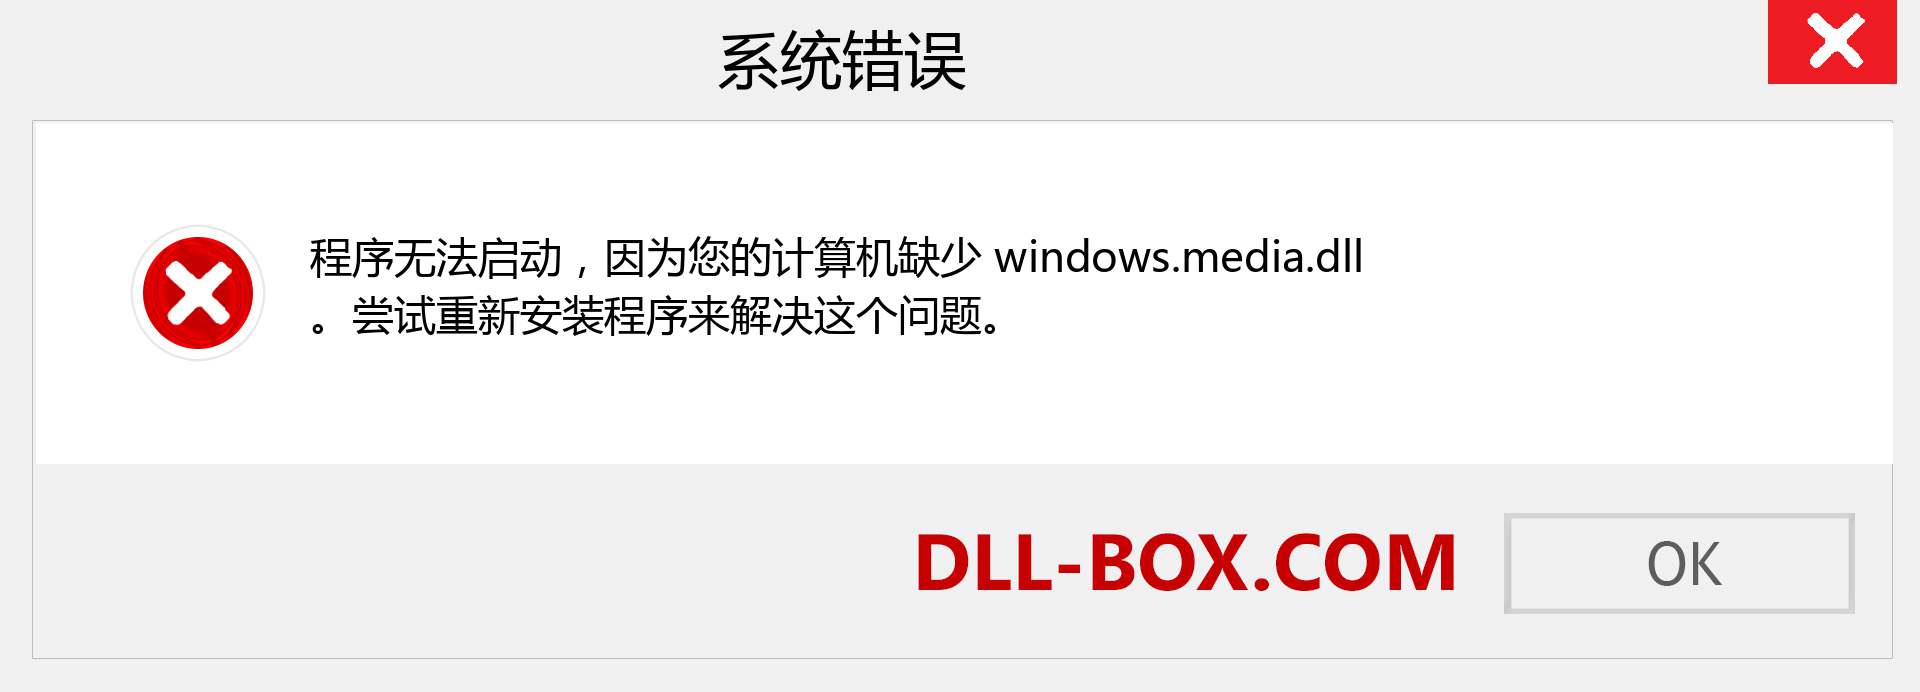 windows.media.dll 文件丢失？。 适用于 Windows 7、8、10 的下载 - 修复 Windows、照片、图像上的 windows.media dll 丢失错误